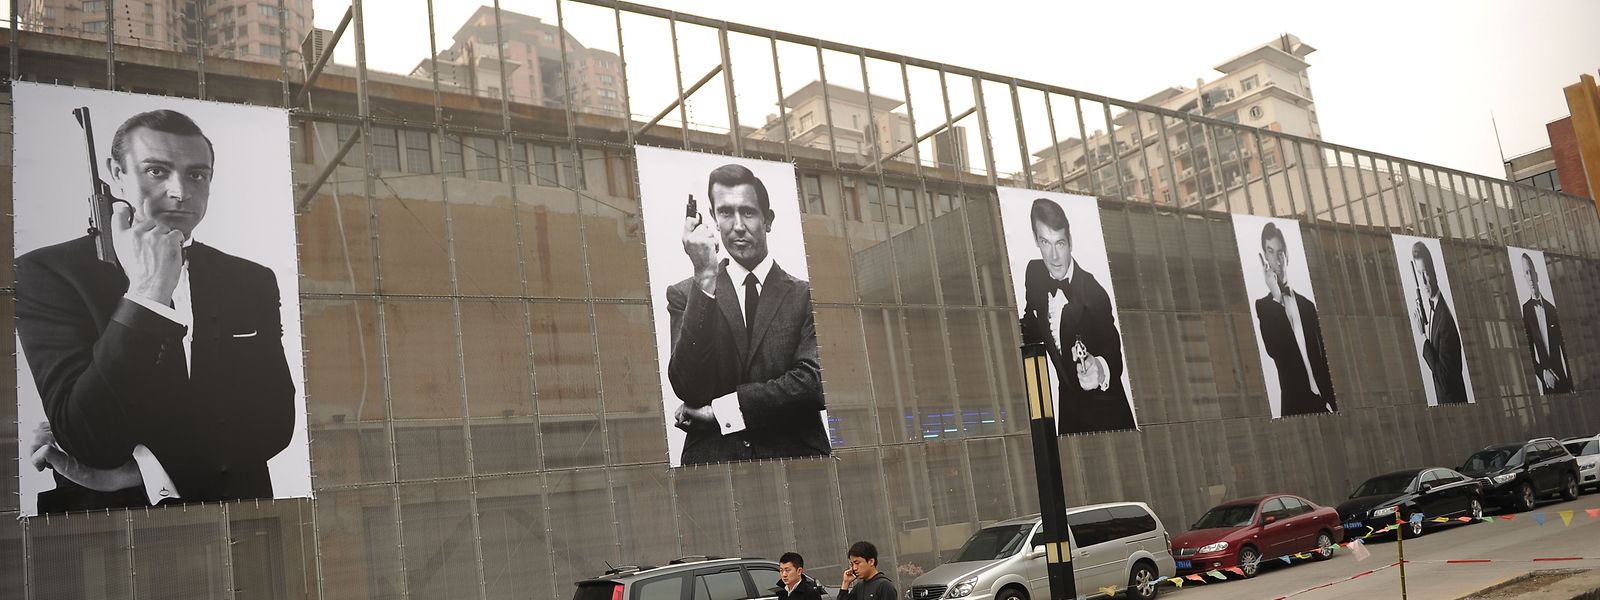 Im Rahmen einer James-Bond-Ausstellung wurden in Shanghai Poster sämtlicher Bond-Darsteller angebracht. Die Reihe wird demnächst um einen Namen erweitert.